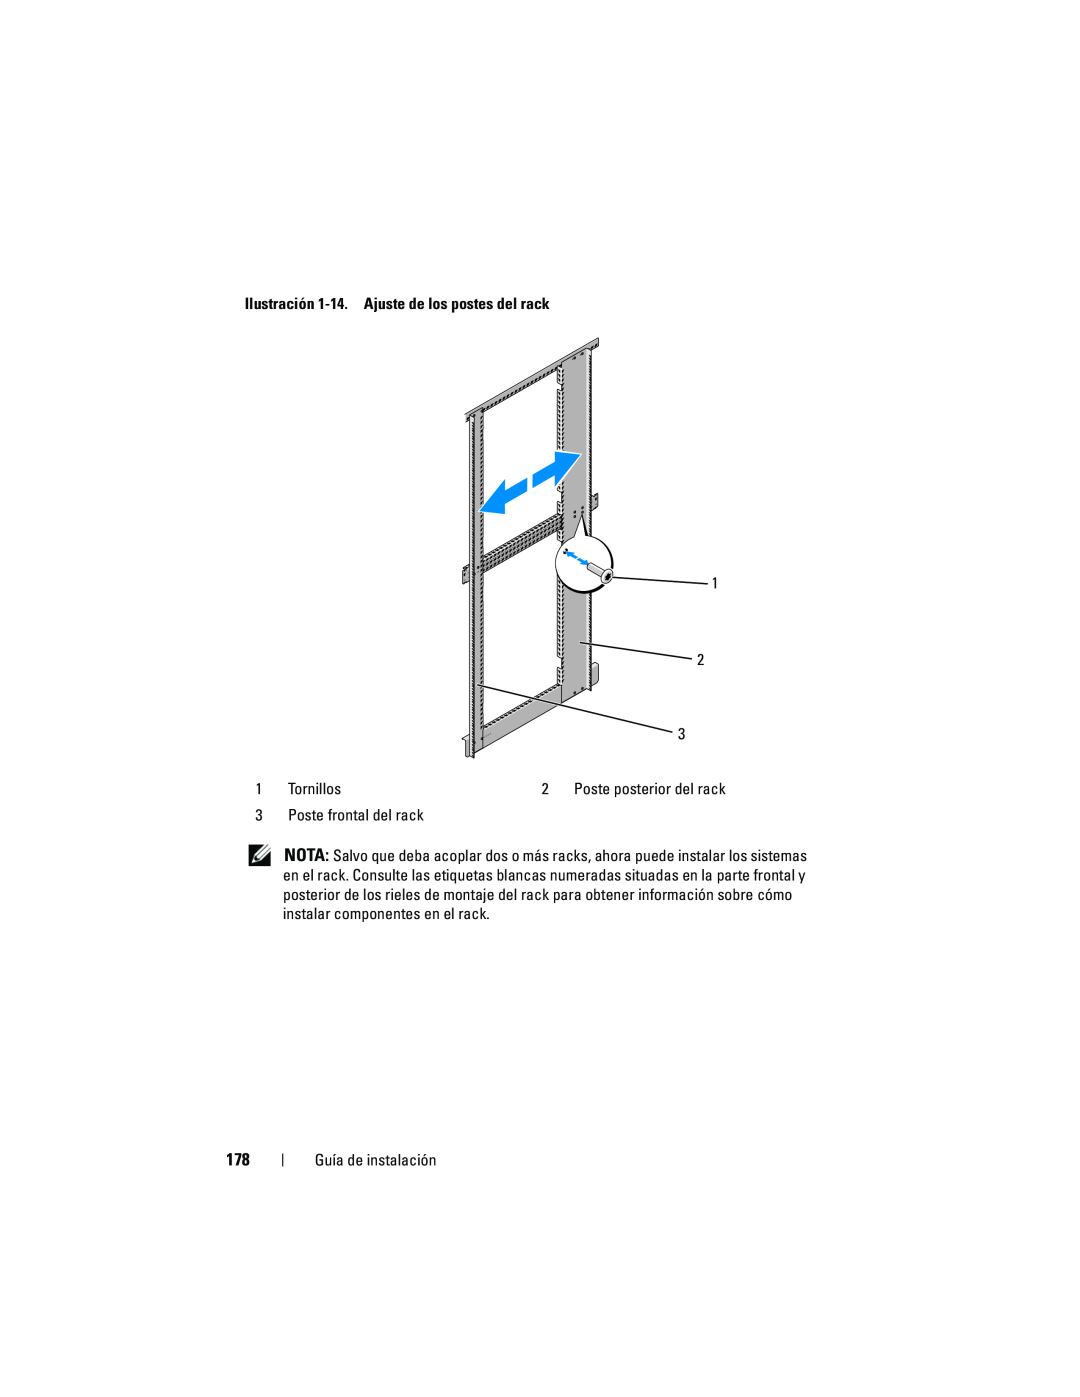 Dell 4220 manual Ilustración 1-14. Ajuste de los postes del rack, Tornillos, Poste frontal del rack, Guía de instalación 